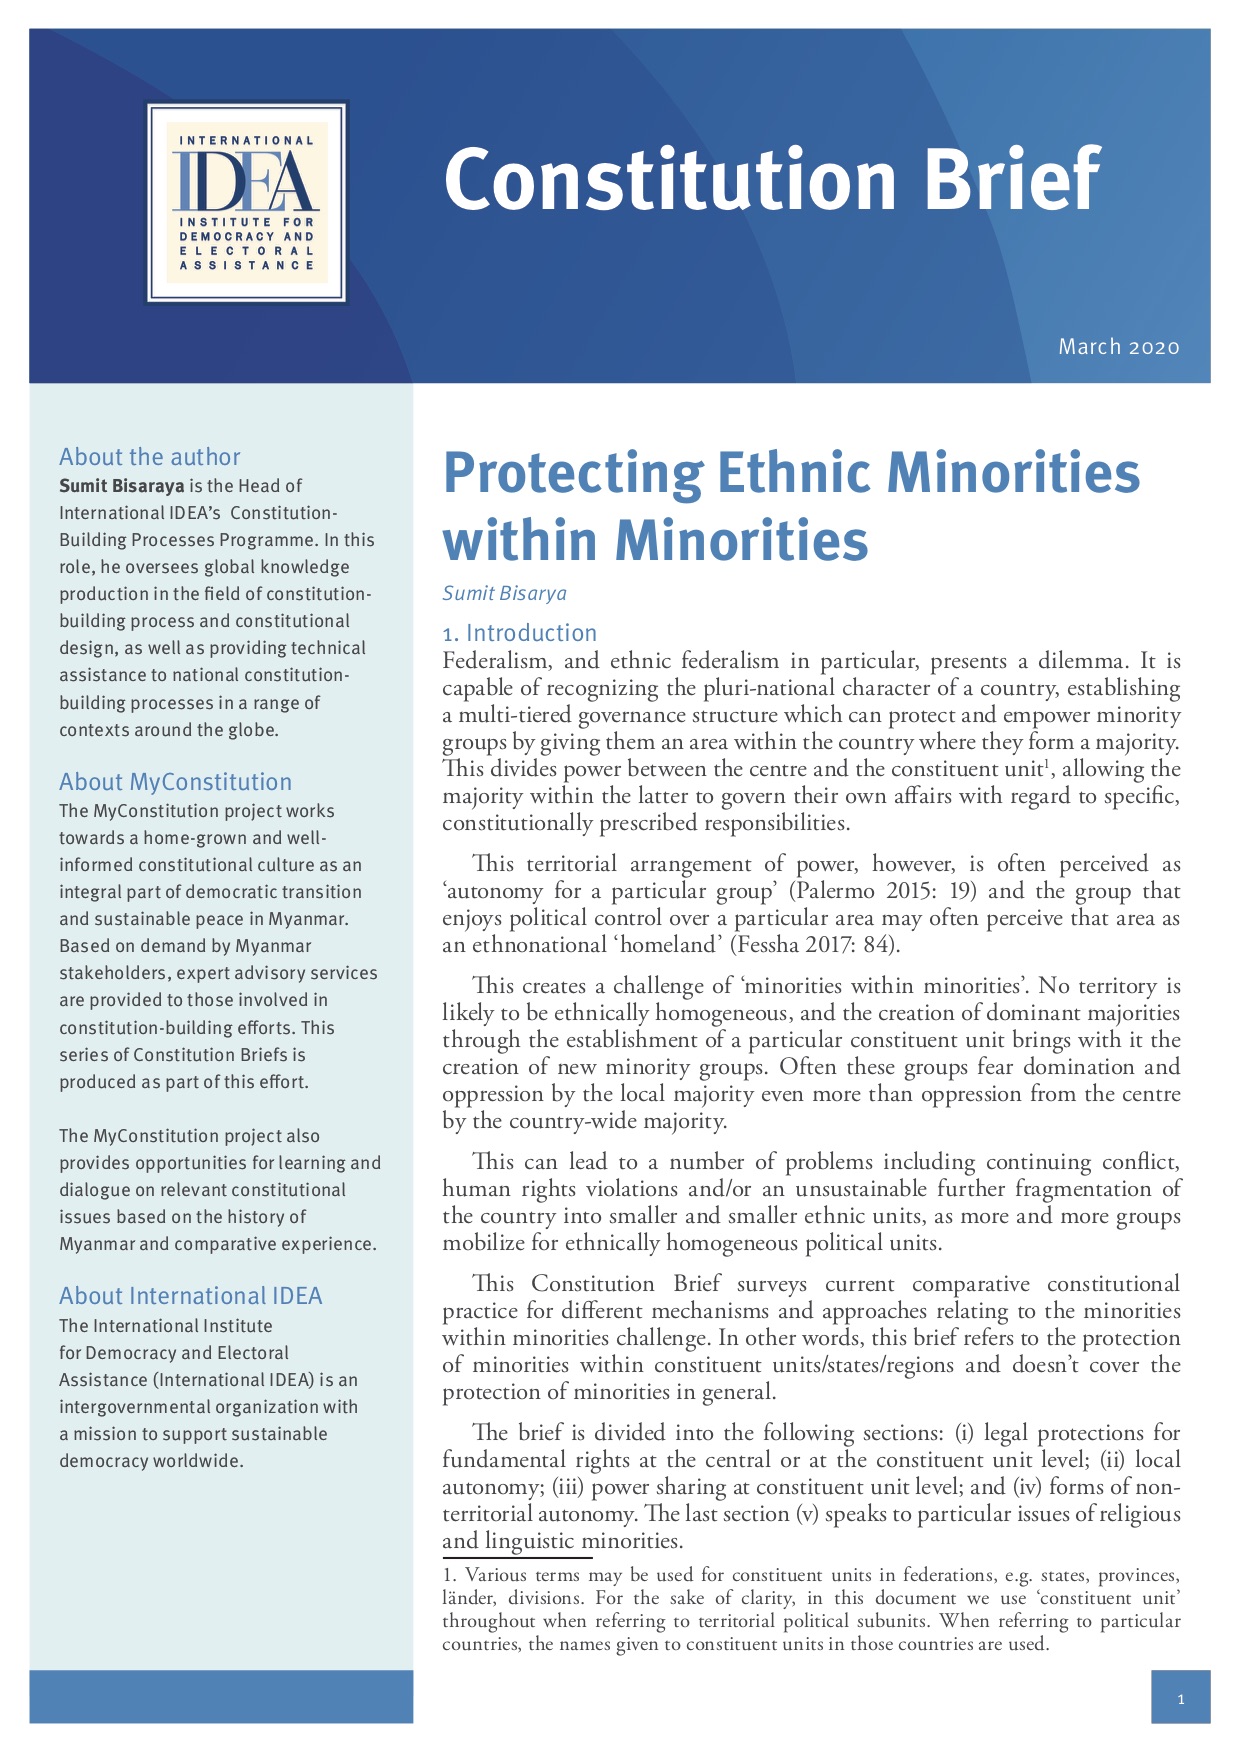 Protecting Ethnic Minorities within Minorities